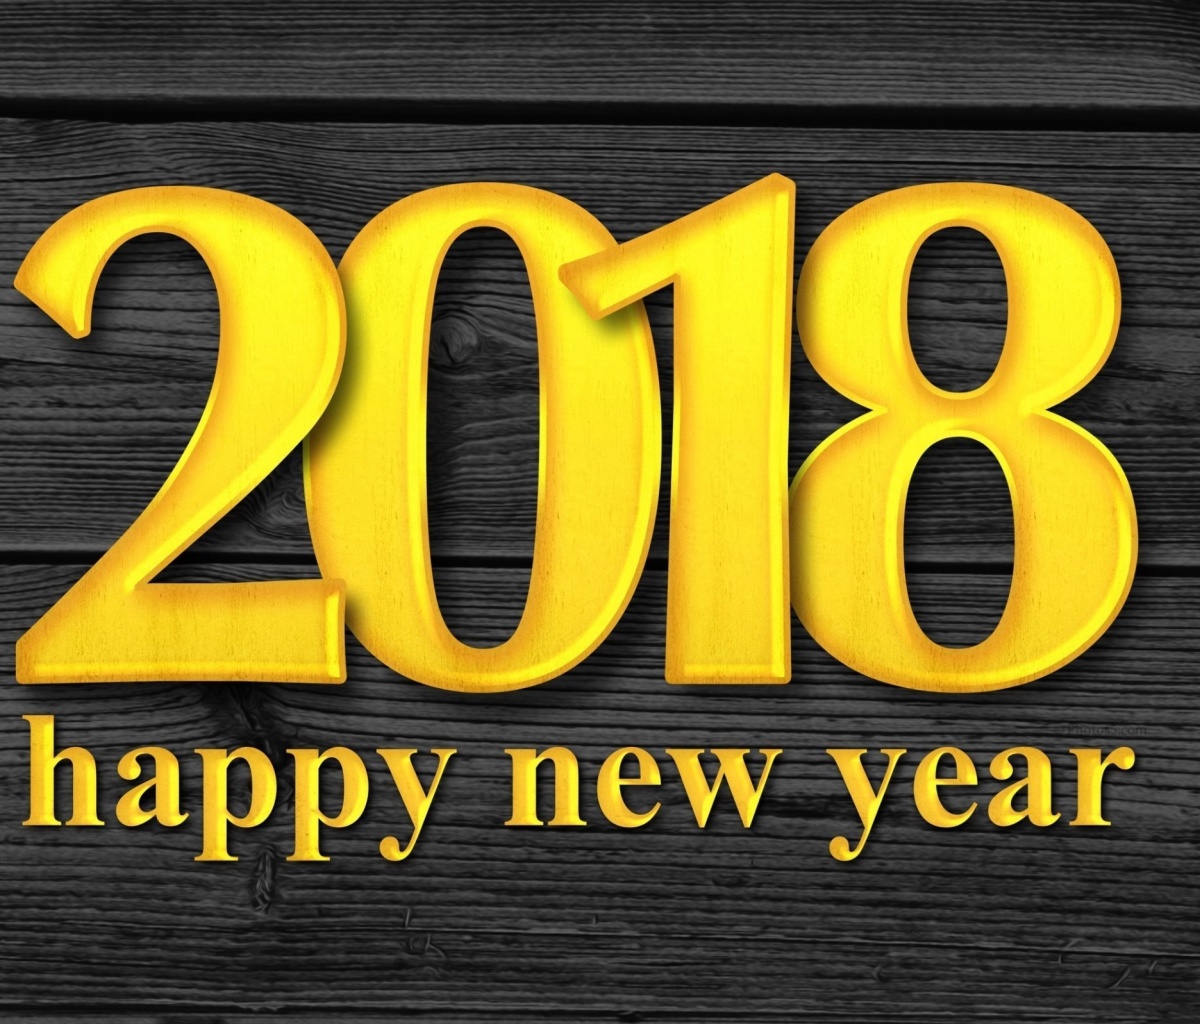 Das 2018 New Year Wooden Texture Wallpaper 1200x1024